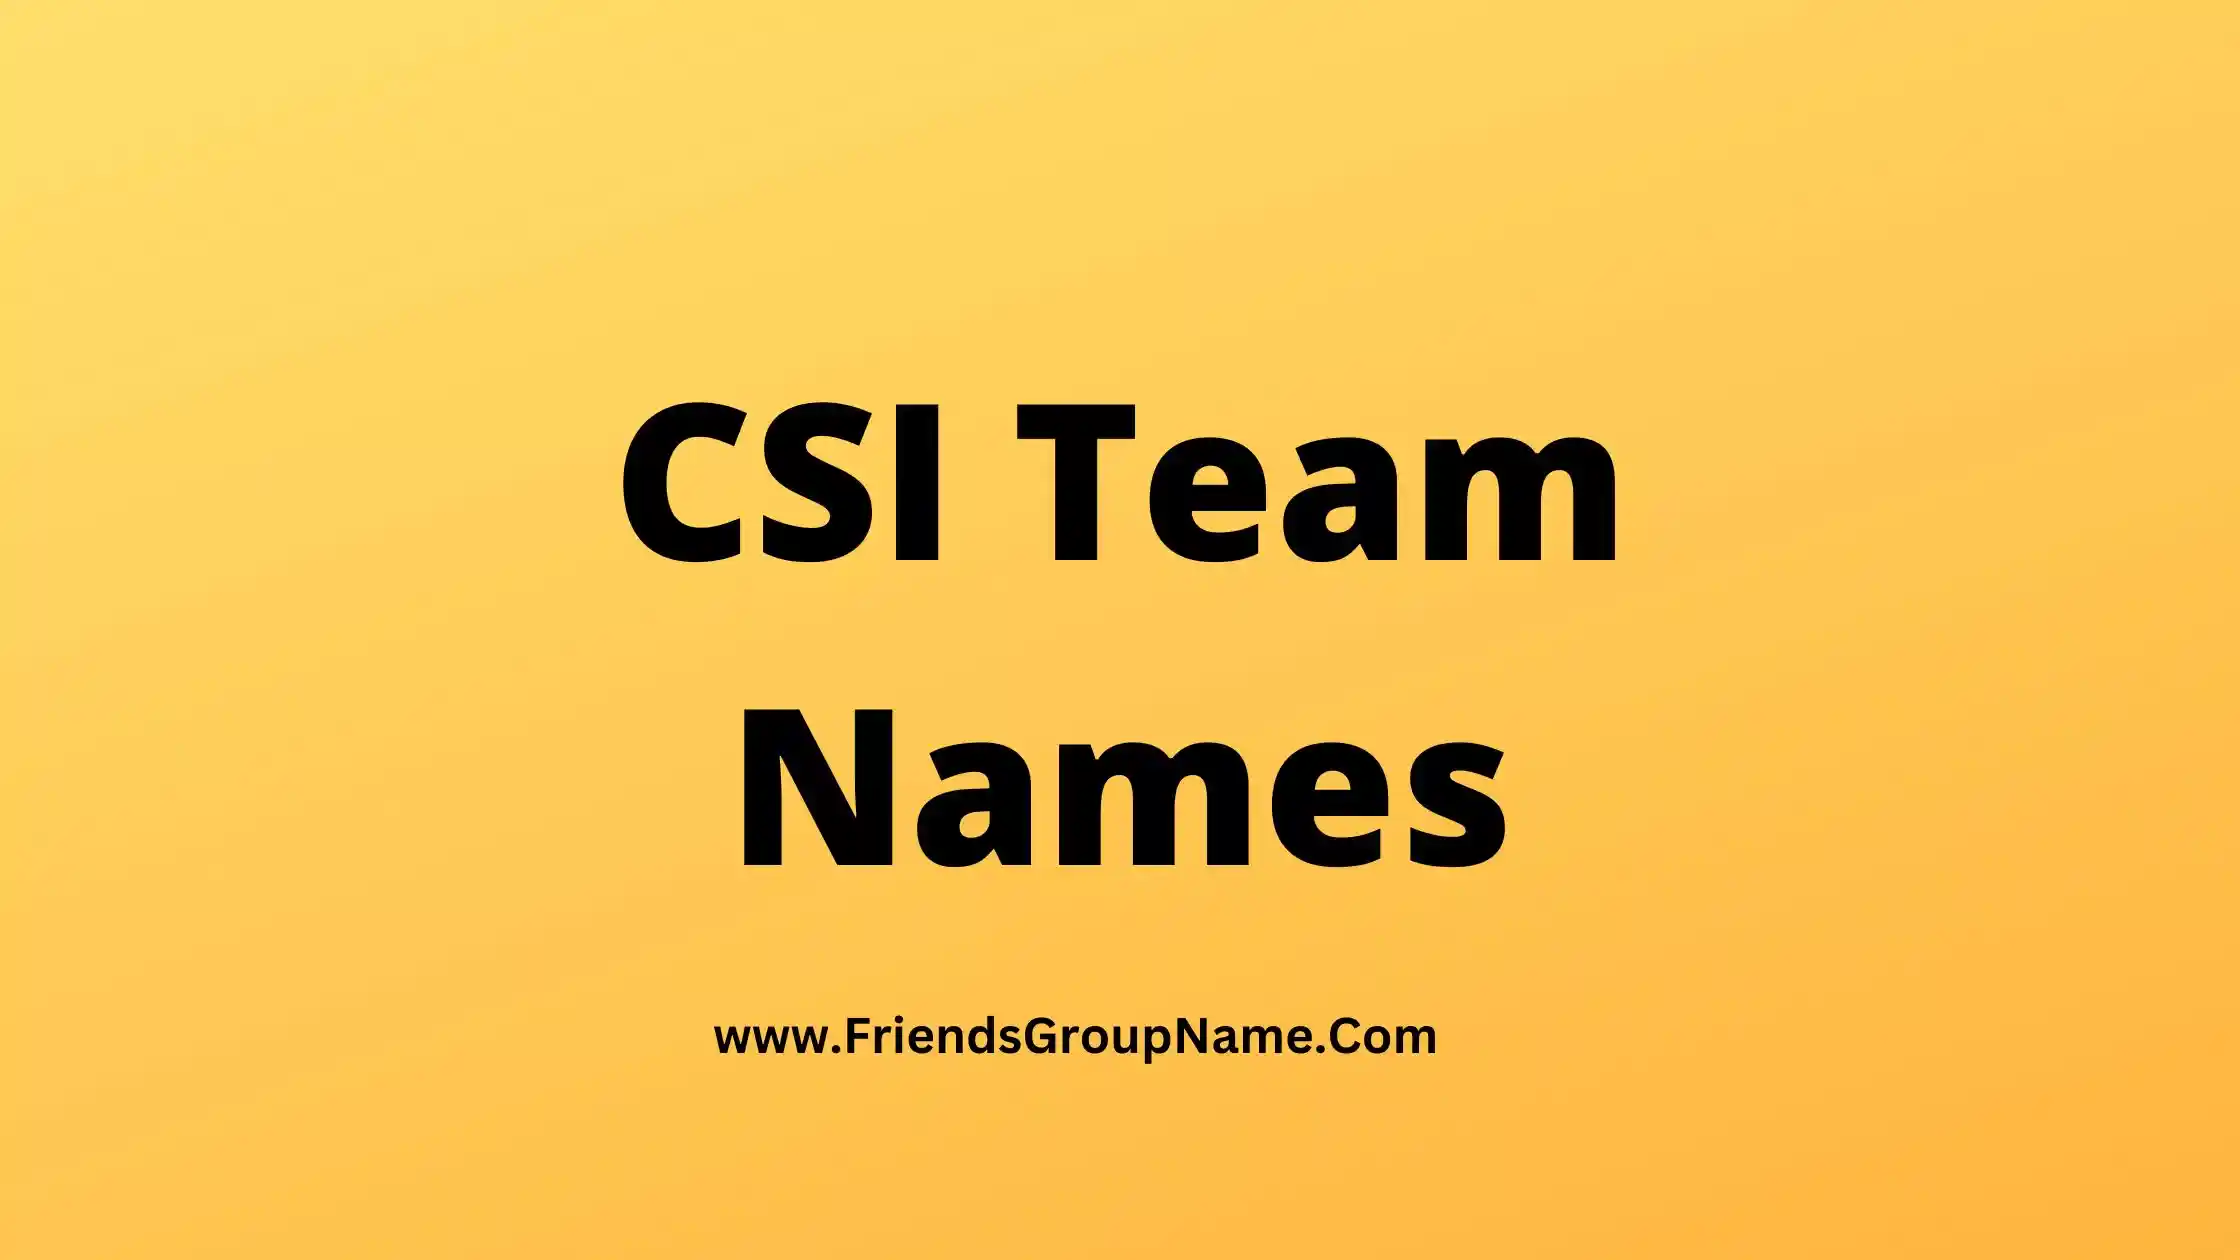 CSI Team Names